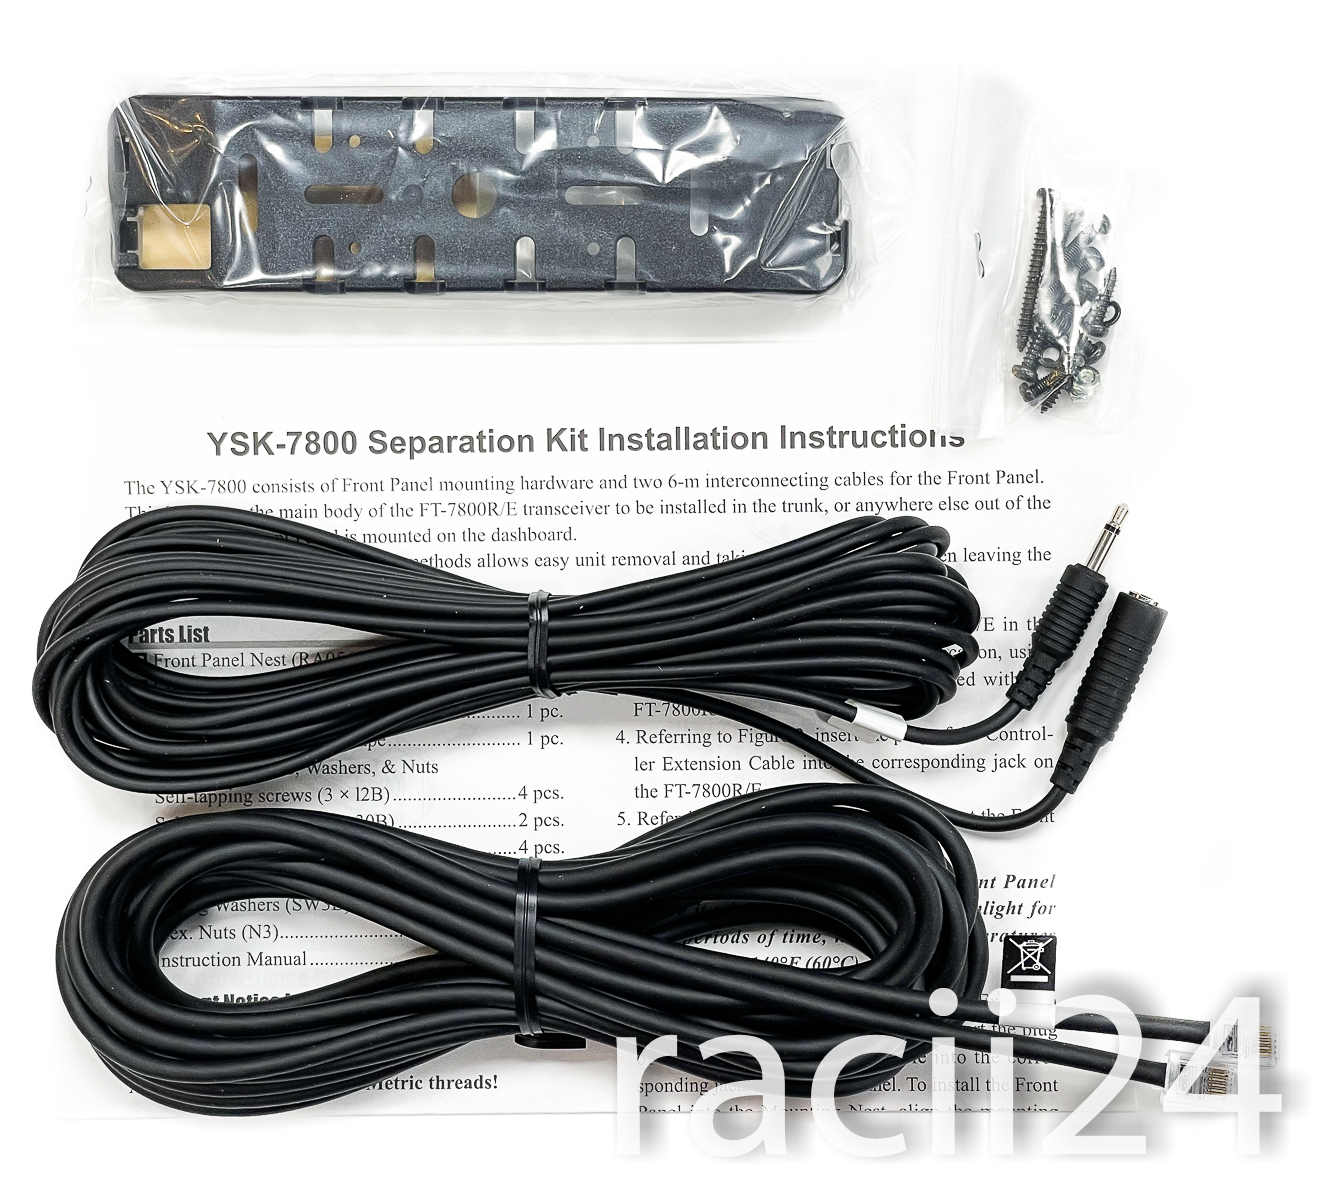 Комплект YSK-7800 для выноса передней панели радиостанции Yaesu FT-7800/FT-7900 в магазине RACII24.RU, фото